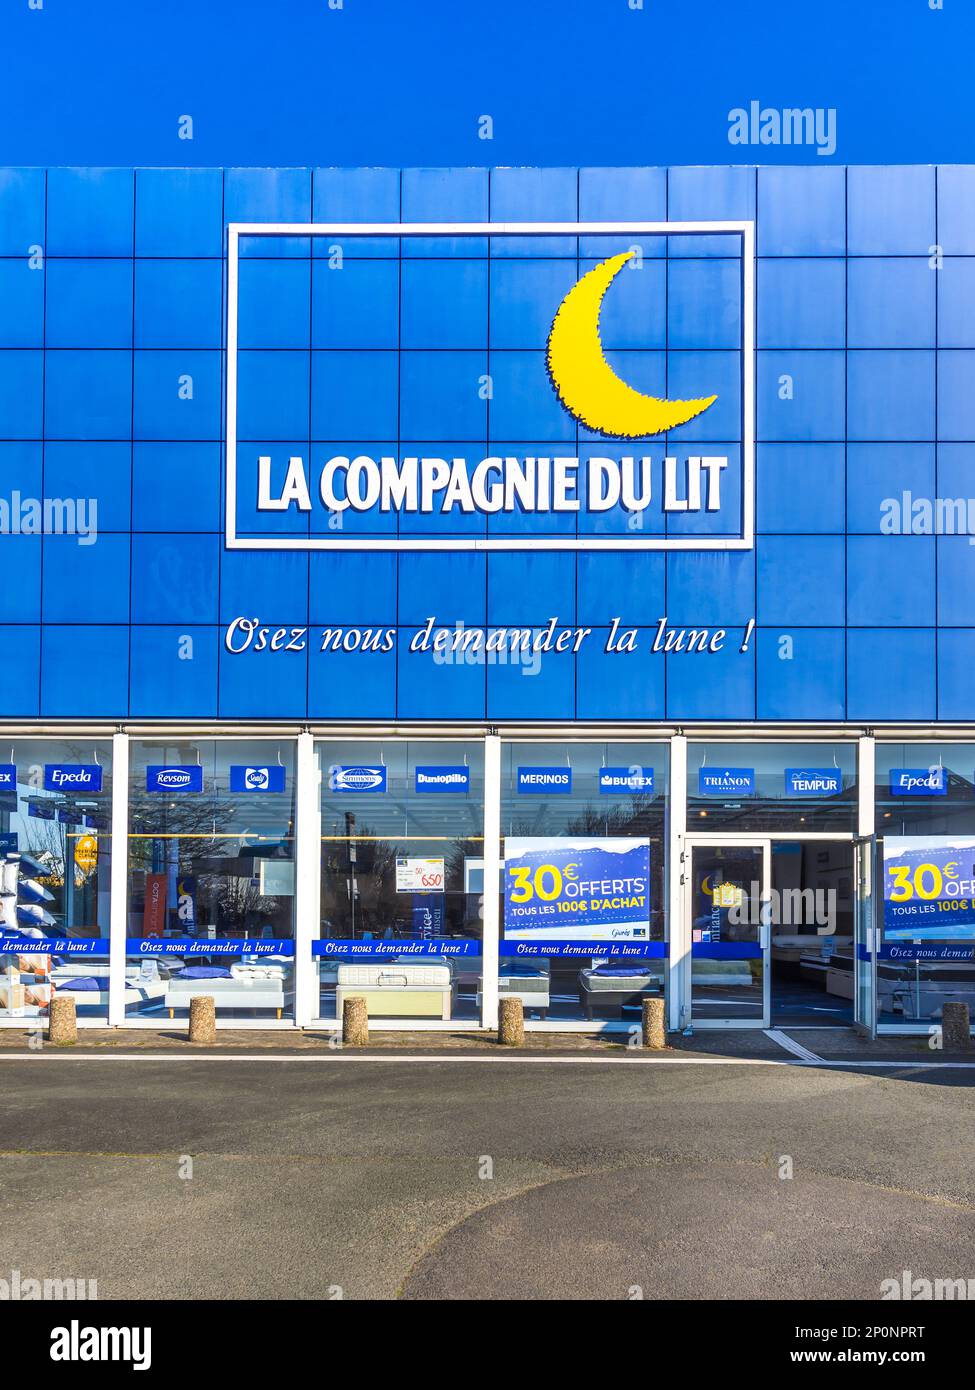 La Compagnie du Lit' bed mattress store in Chambray les Tours,  Indre-et-Loire, France Stock Photo - Alamy